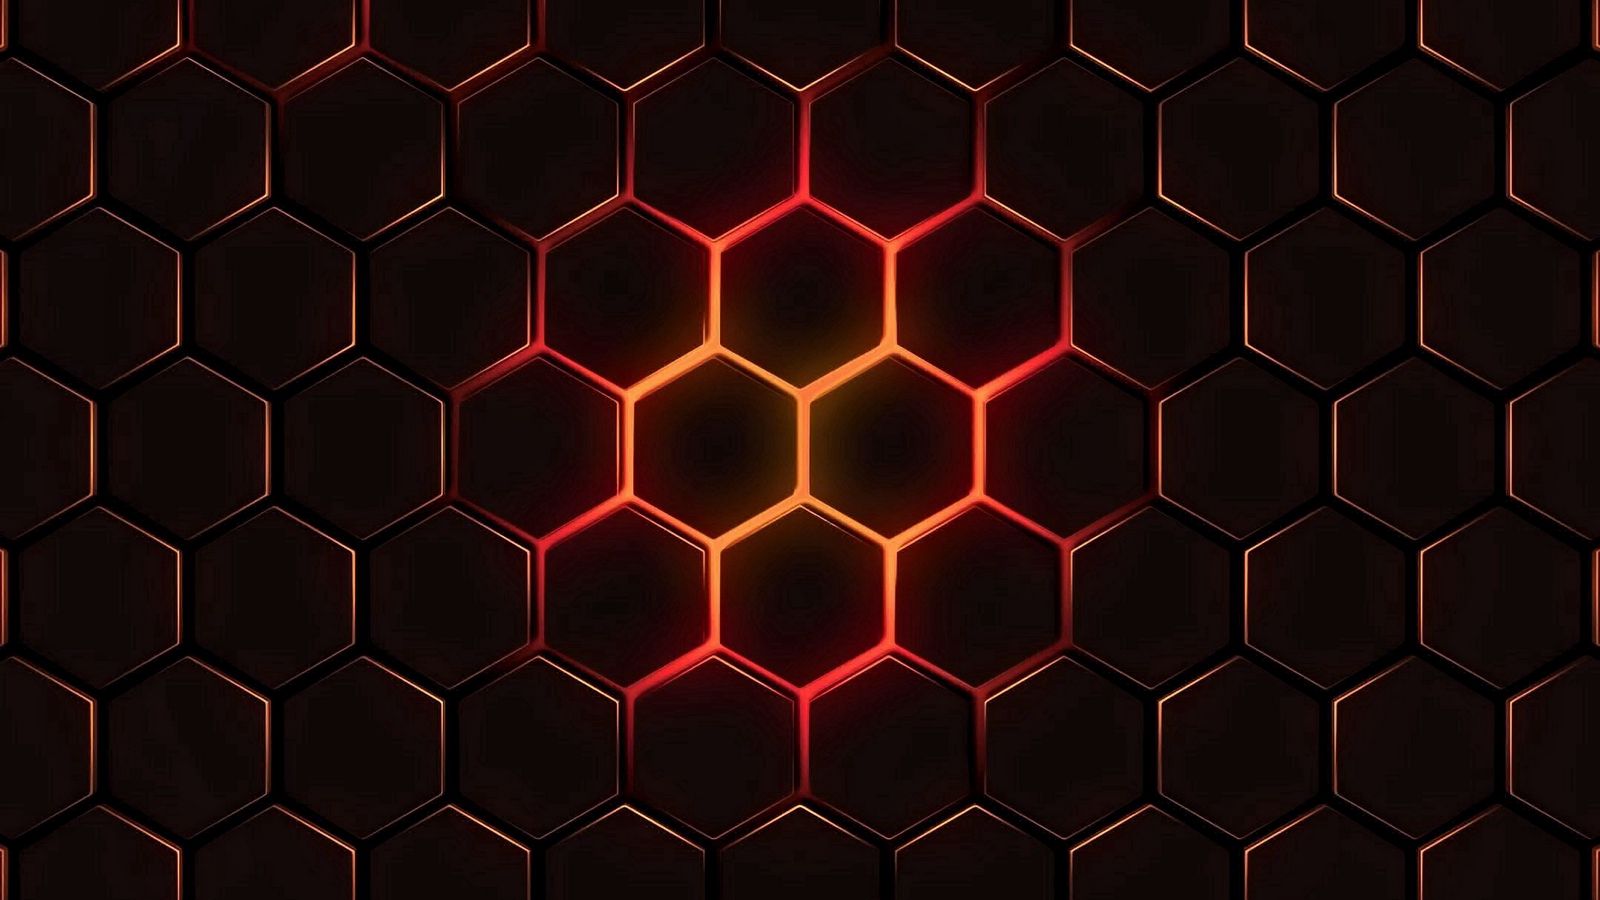 Download wallpaper 1600x900 hexagons, cells, texture, glow, dark ...